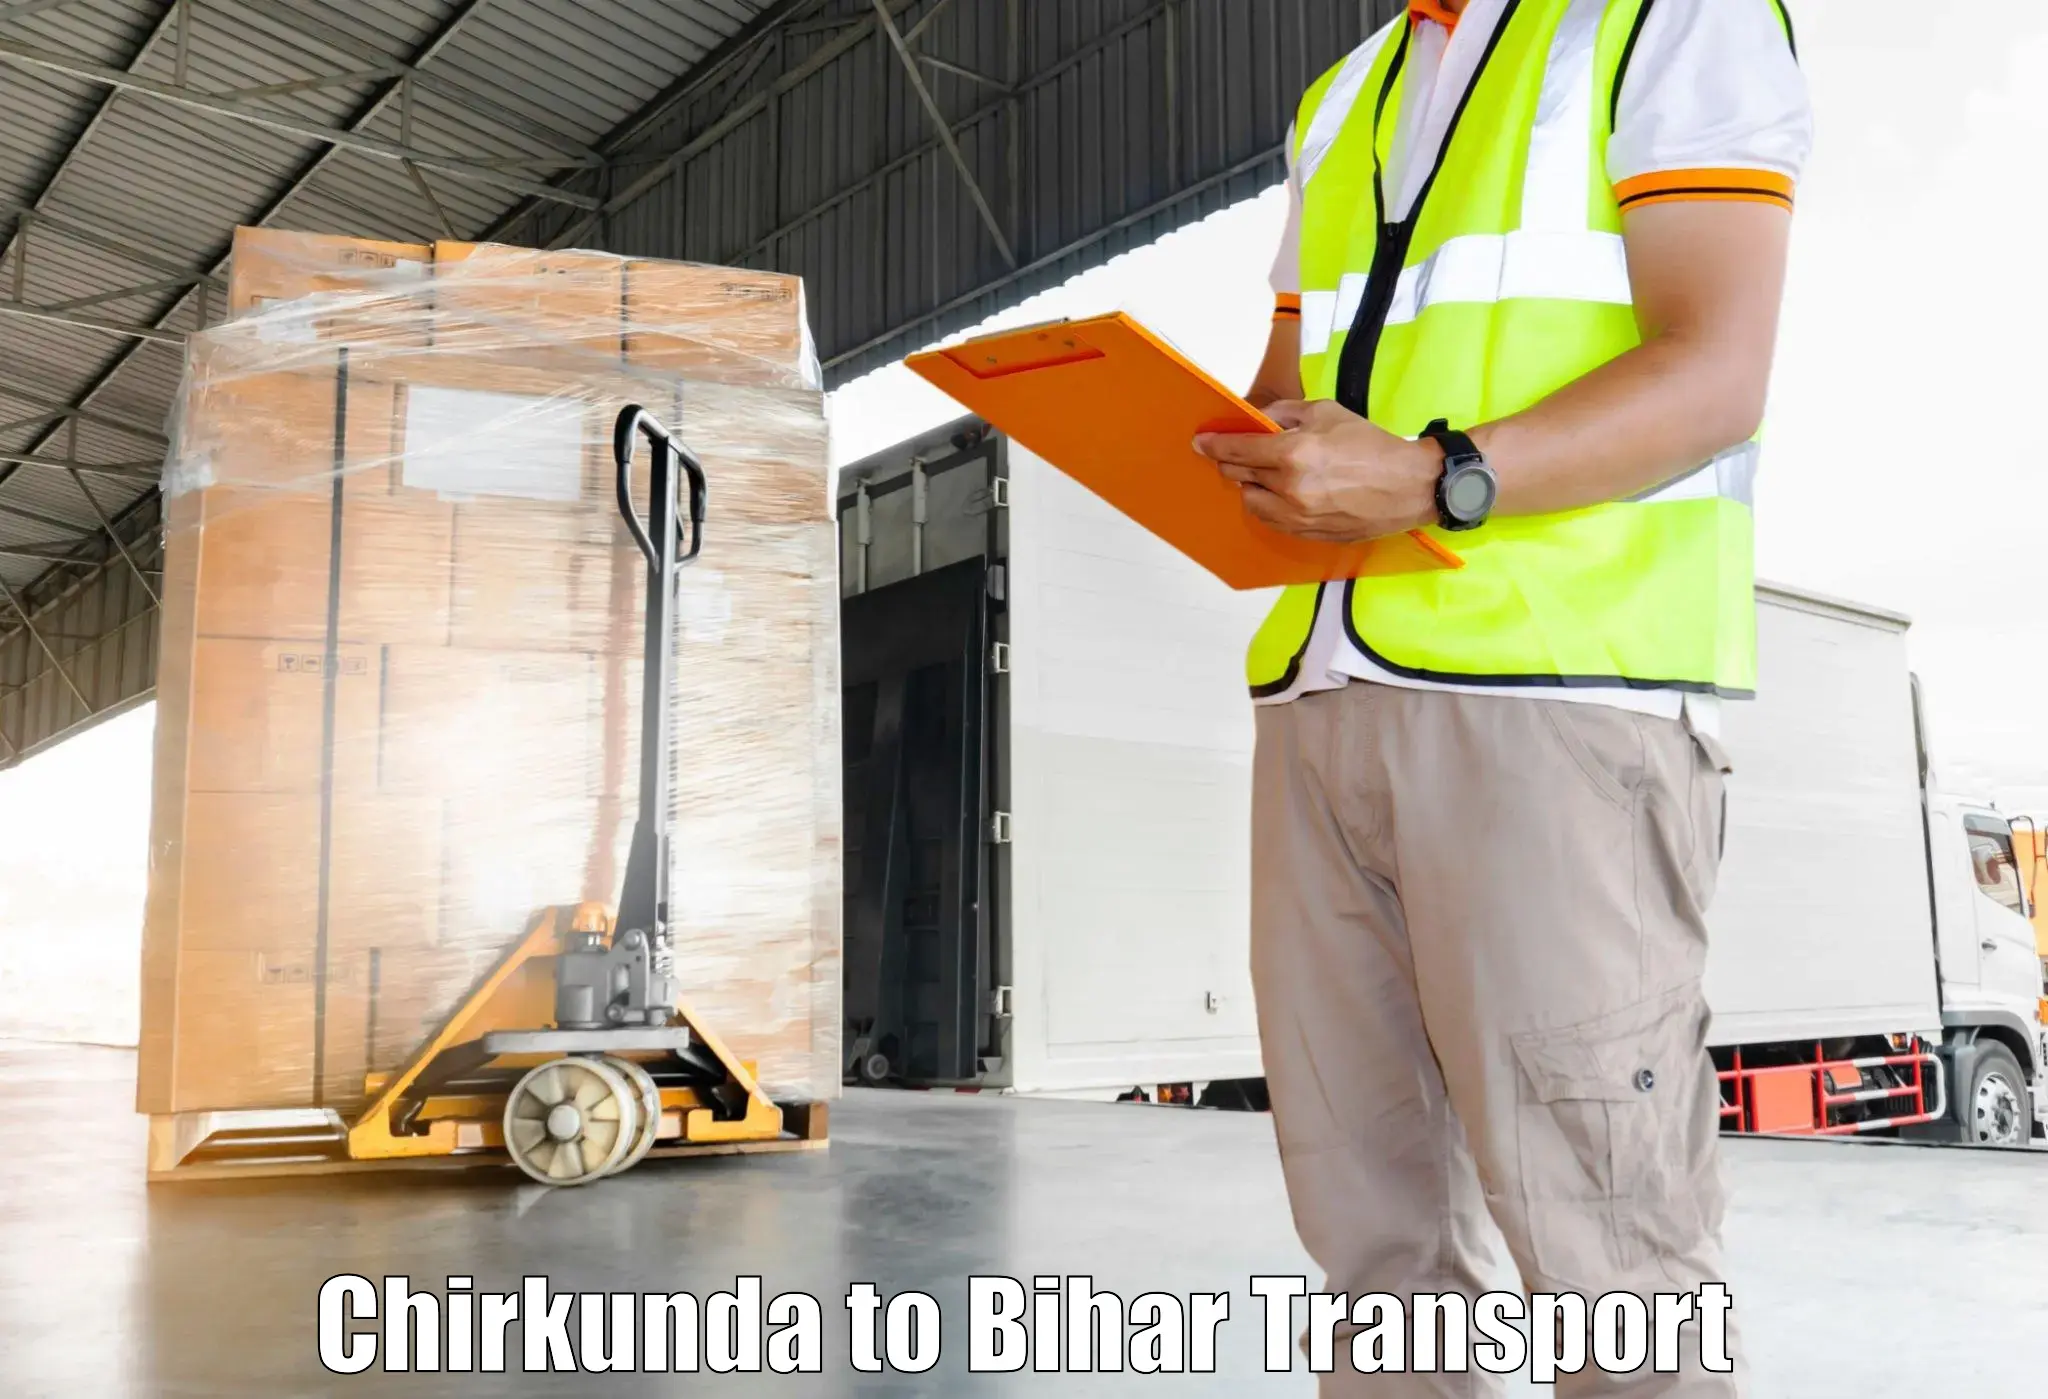 Online transport service Chirkunda to Barhiya